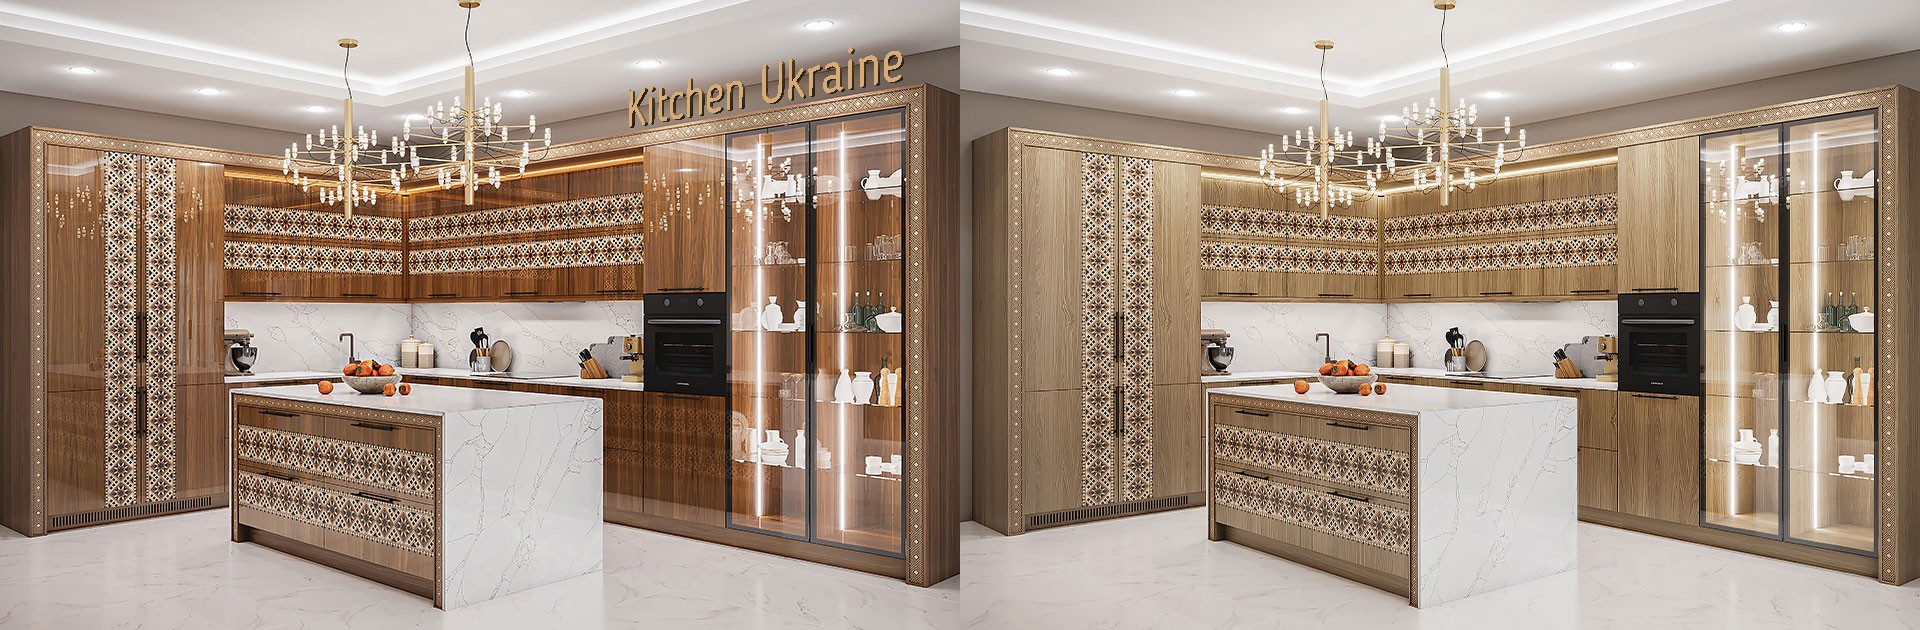 Кухня Ukraine